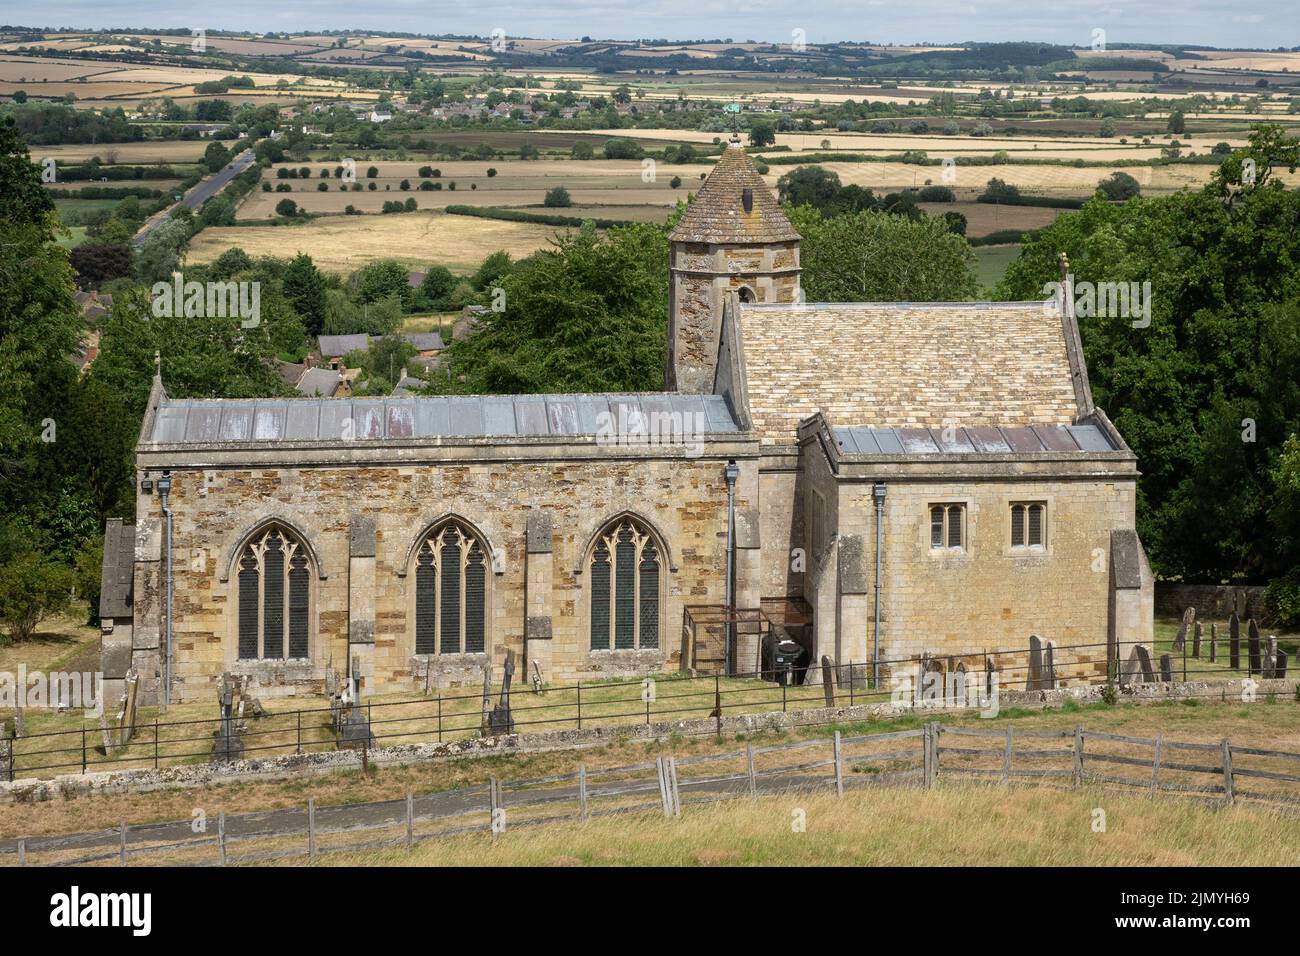 Angleterre, Northamptonshire, église de Rockingham Banque D'Images